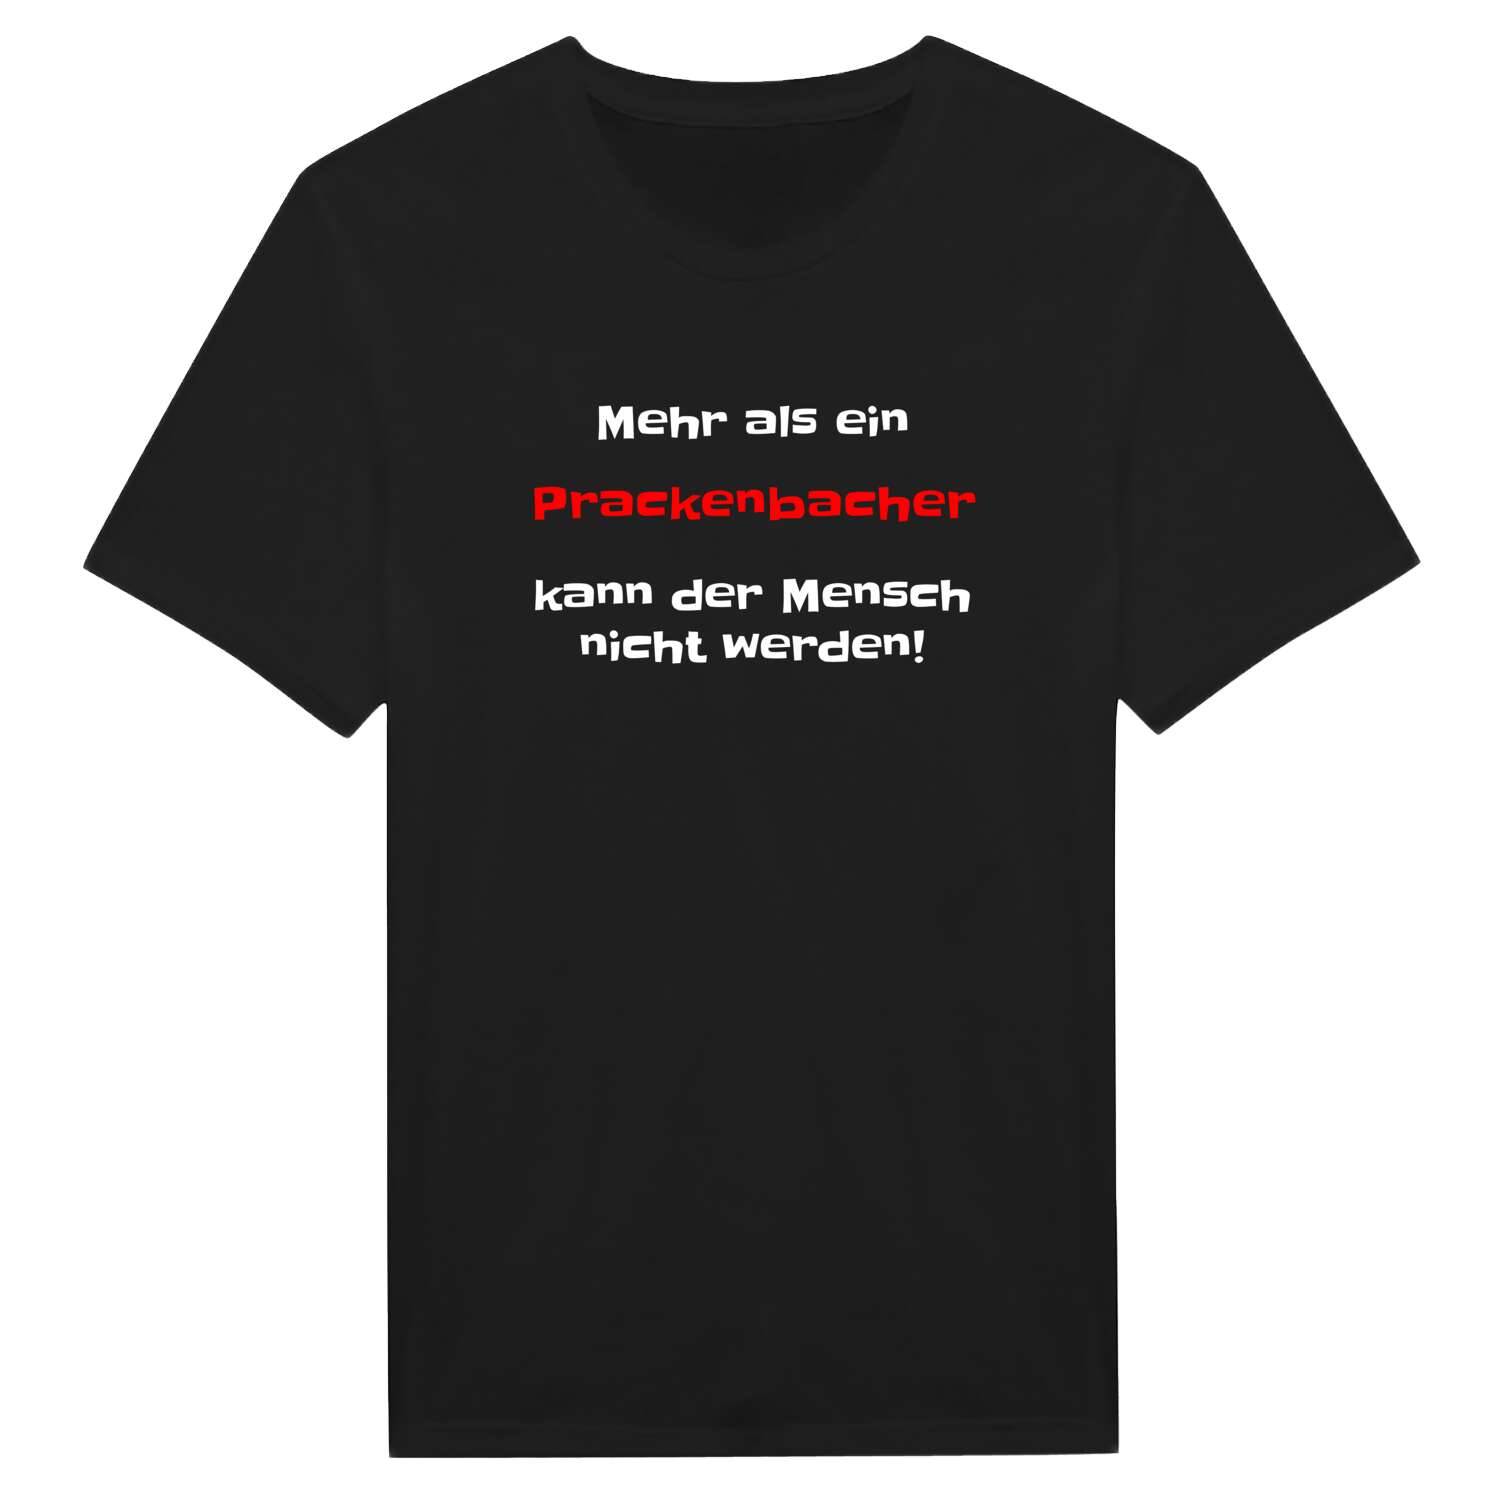 Prackenbach T-Shirt »Mehr als ein«